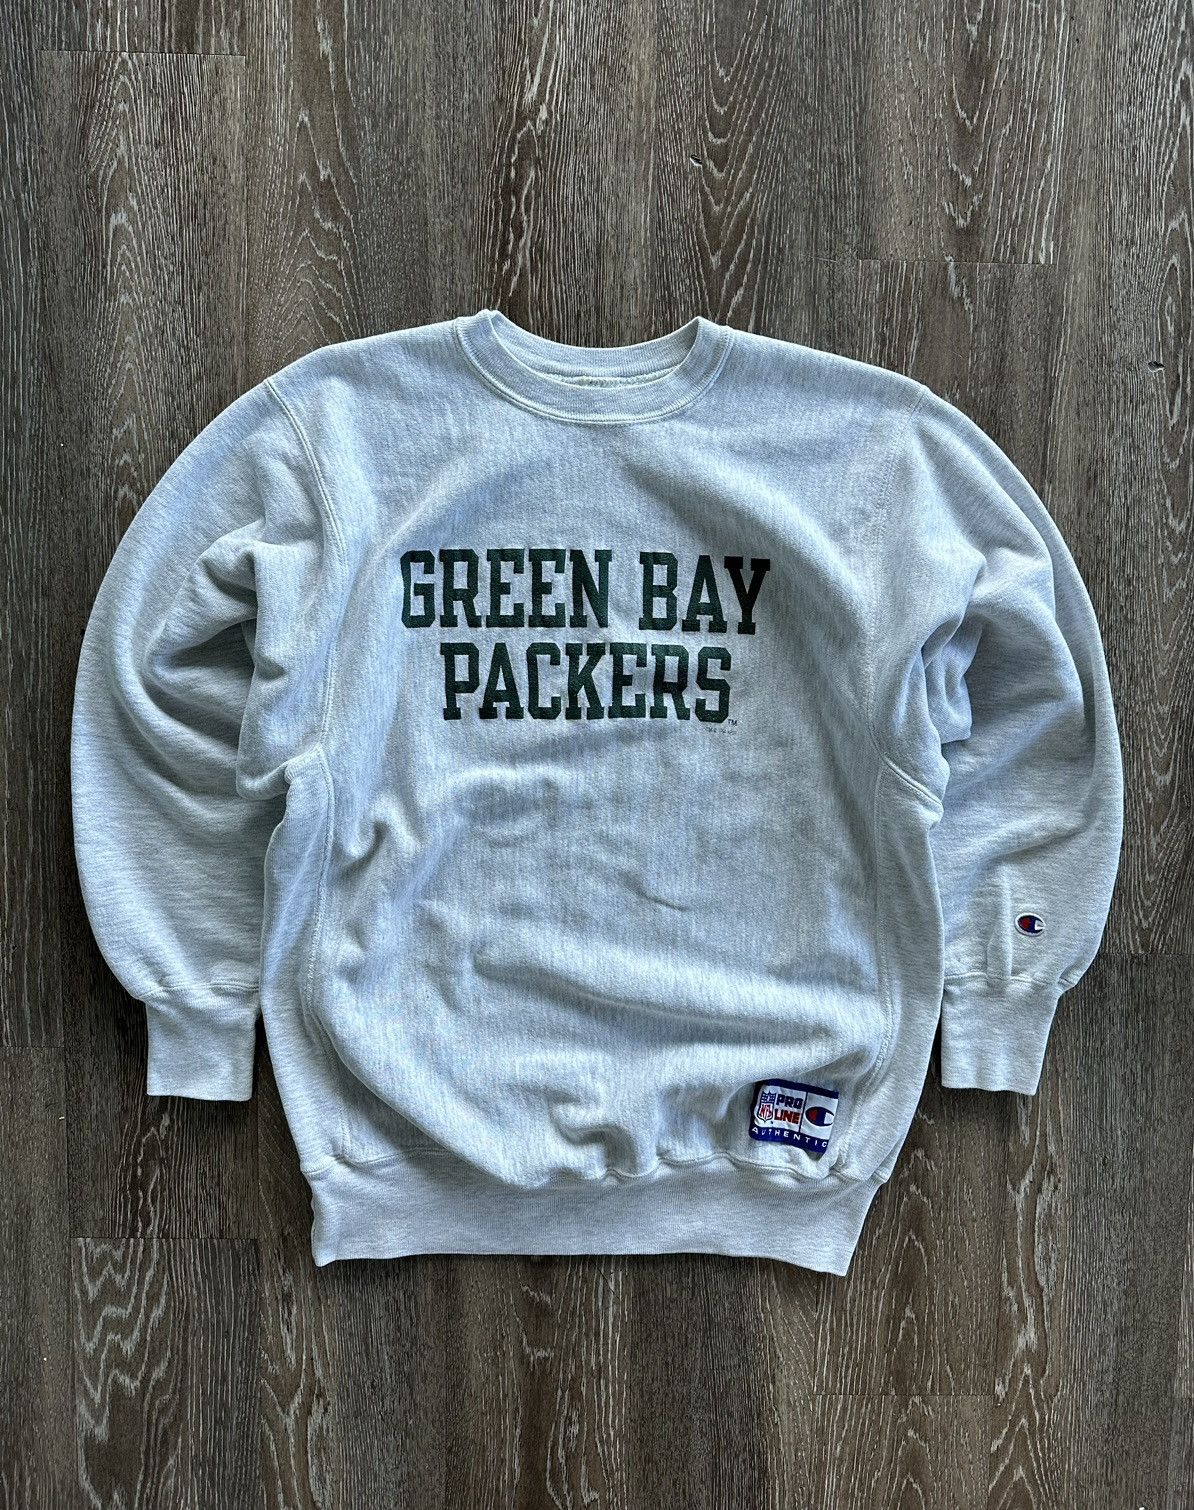 Vintage 90s Reverse Weave Green Bay Packers Sweatshirt | Grailed